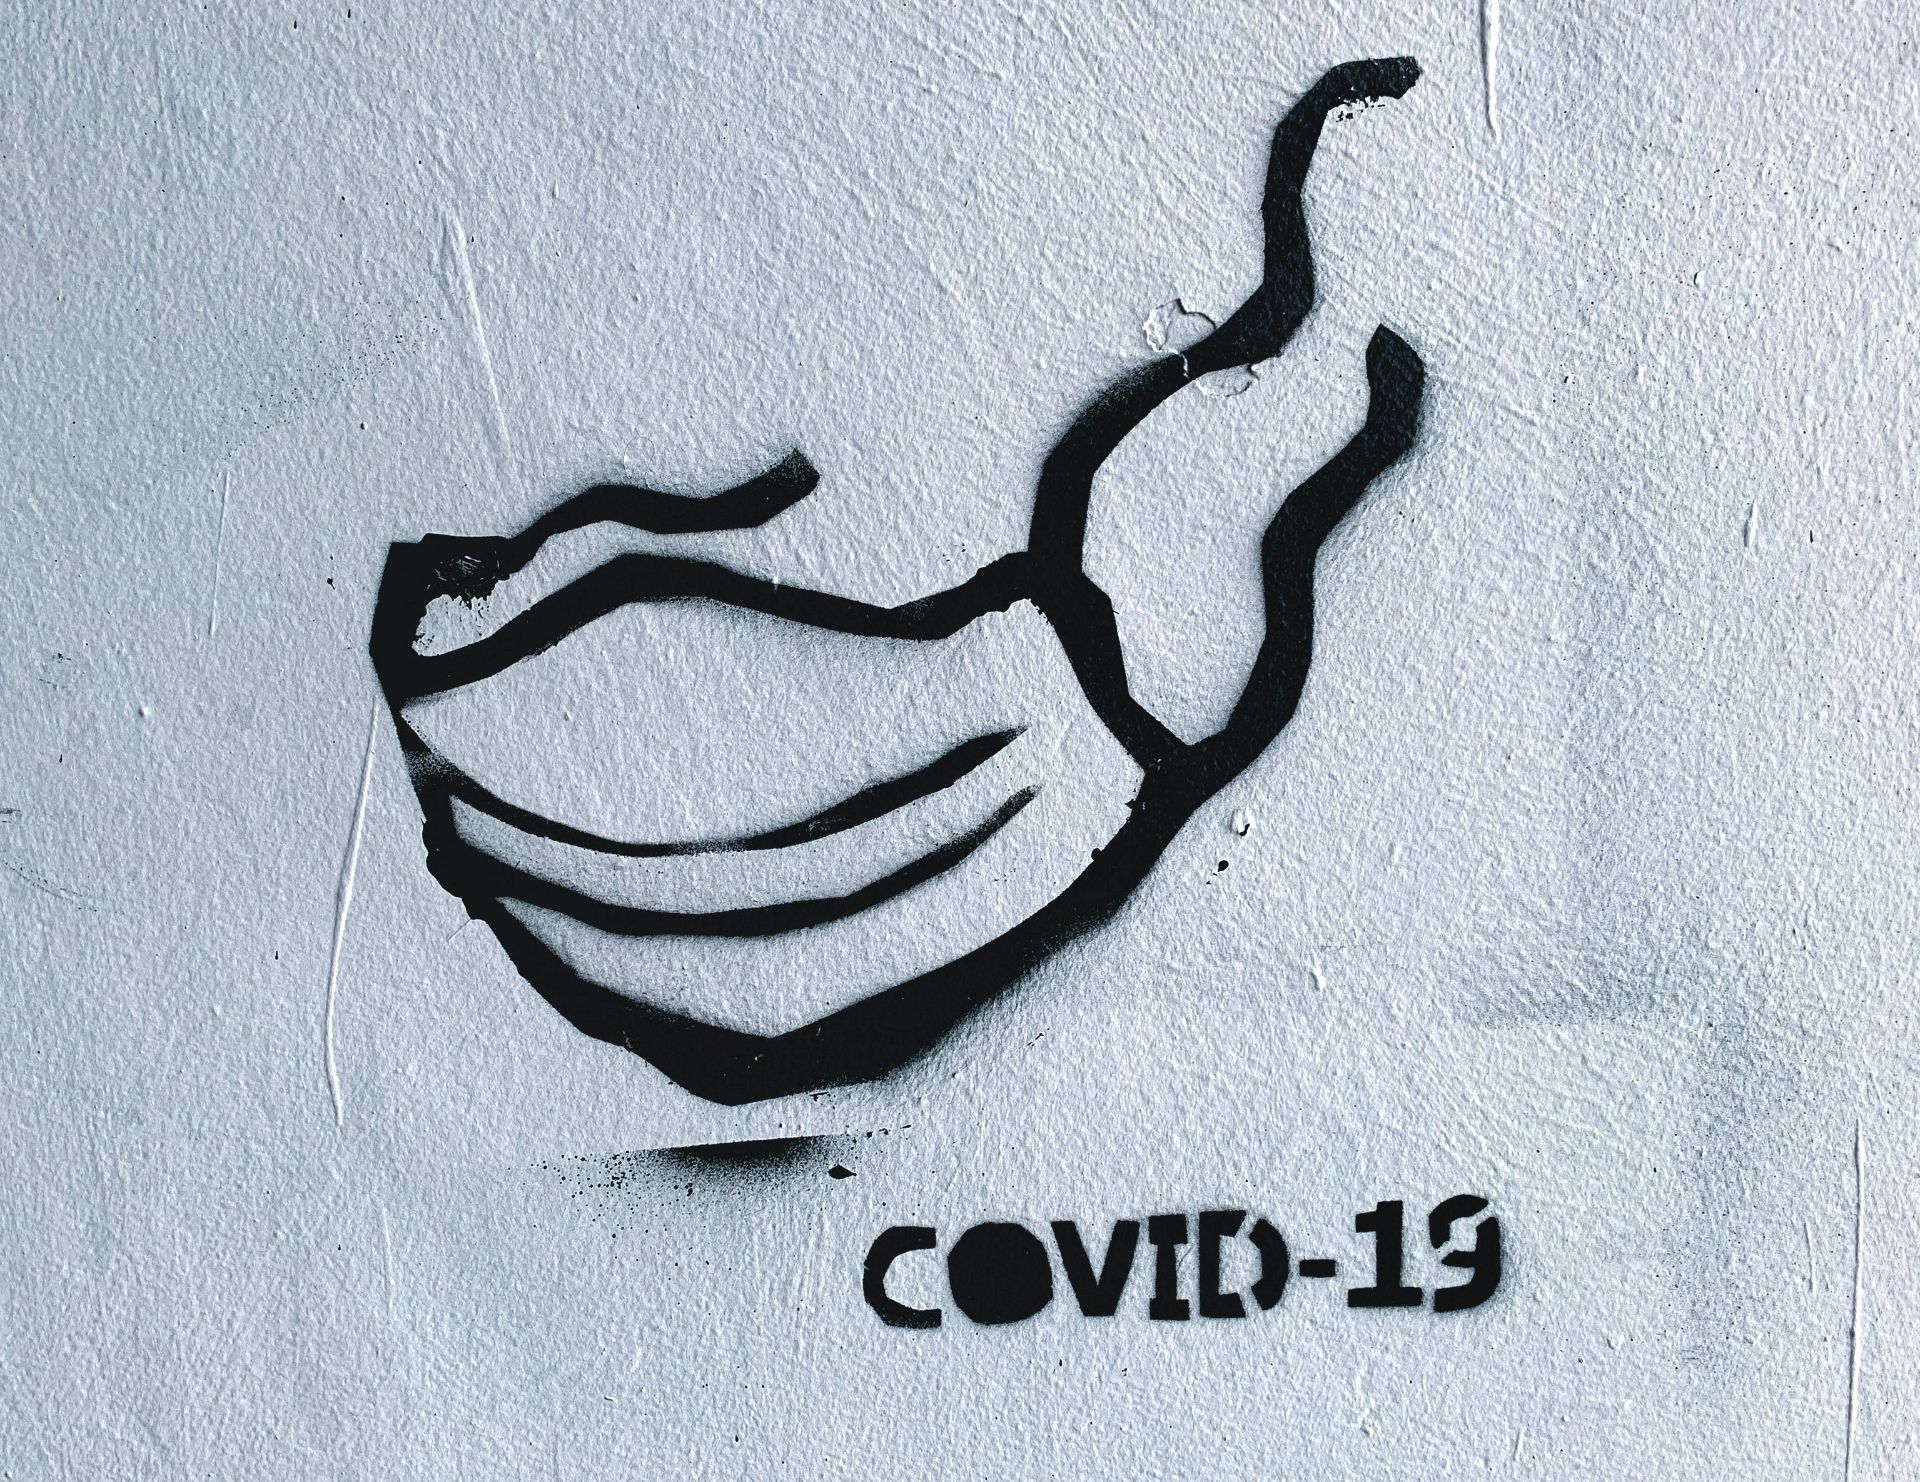 București: rată de incidență COVID-19 în creștere